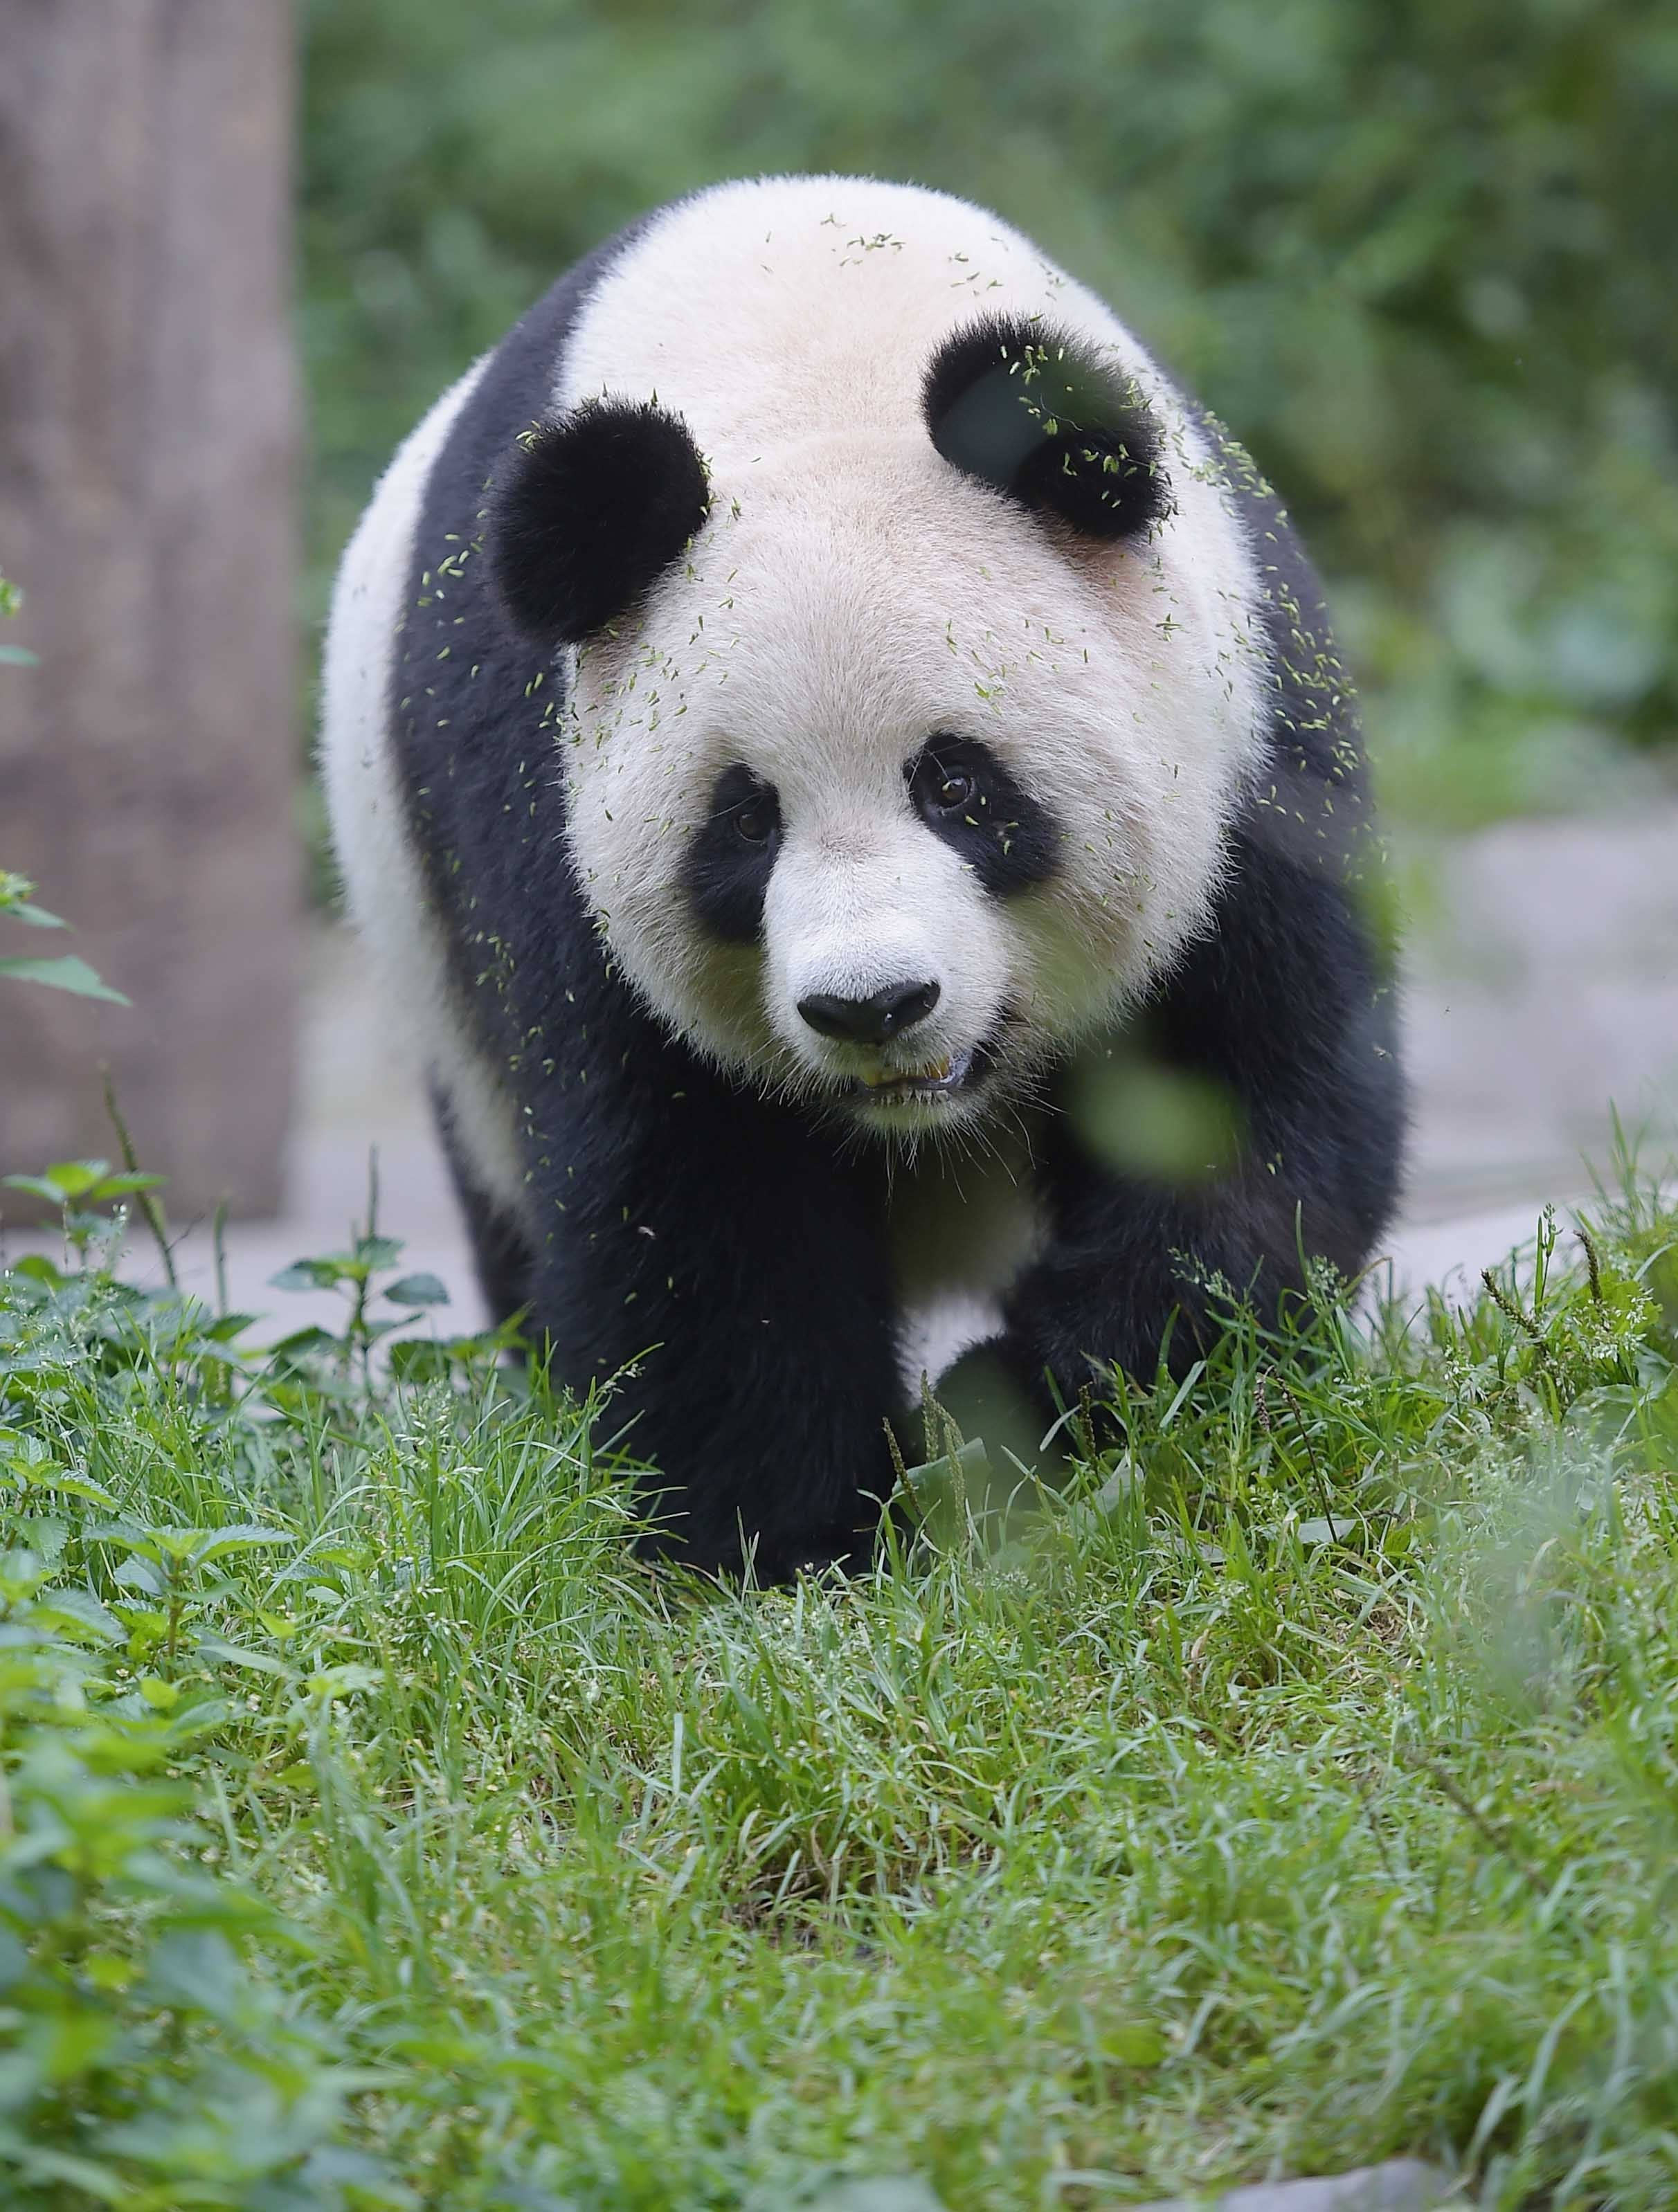 全球唯一圈養棕色大熊貓 七仔被終身認養 | 翻牆來尋奇 | 兩岸 | 聯合新聞網